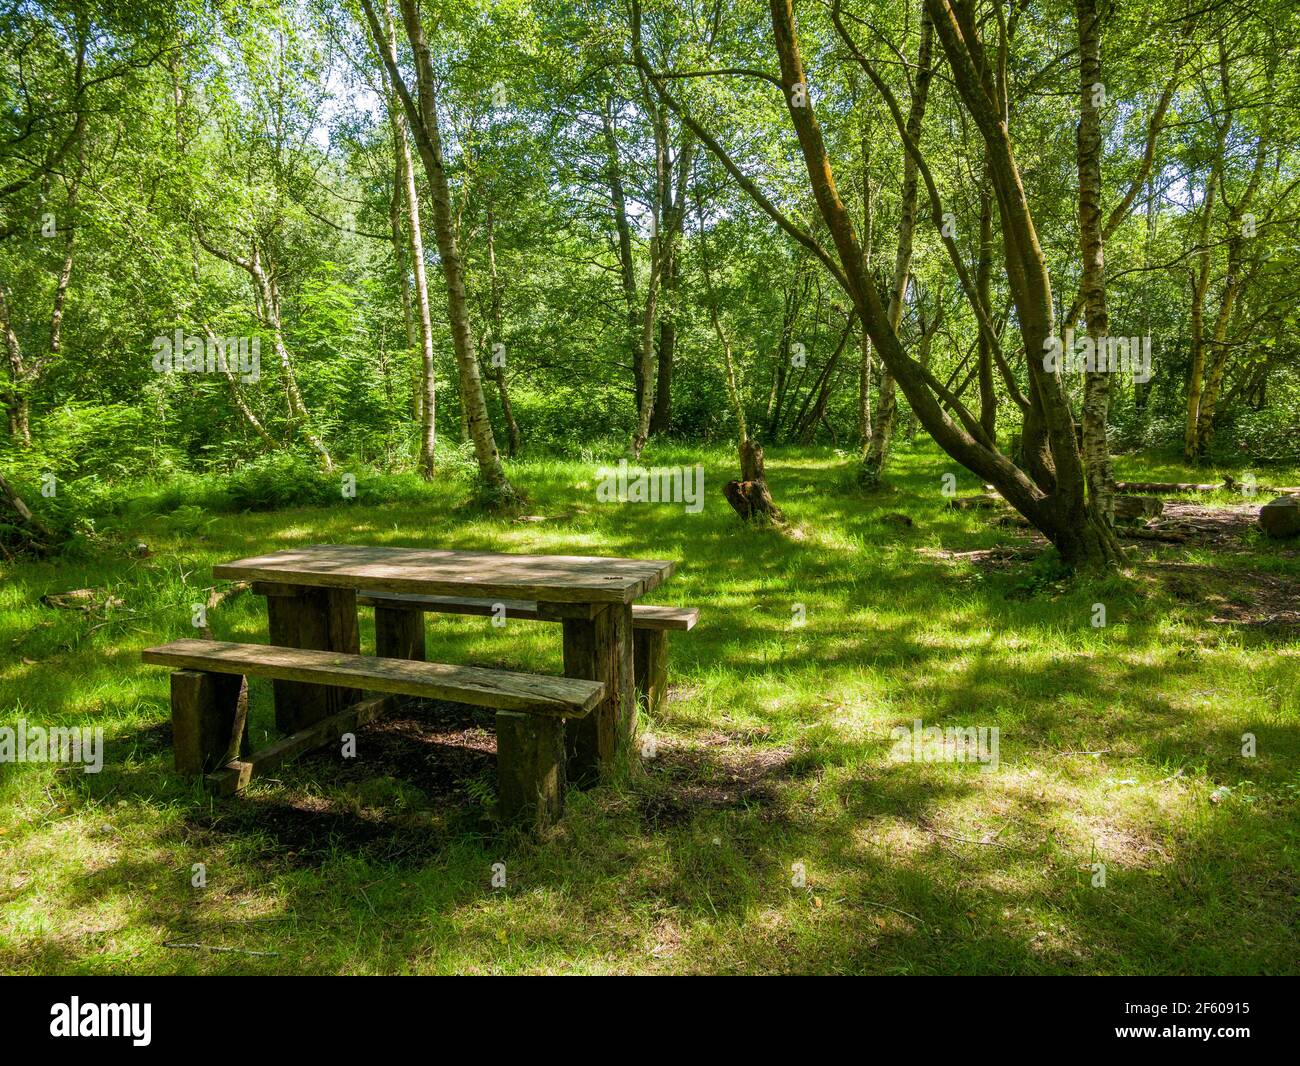 Ein Picknicktisch in einem bewaldeten Gebiet im Shapwick Heath National Nature Reserve, Teil der Avalon Marshes in den Somerset Levels, England. Stockfoto